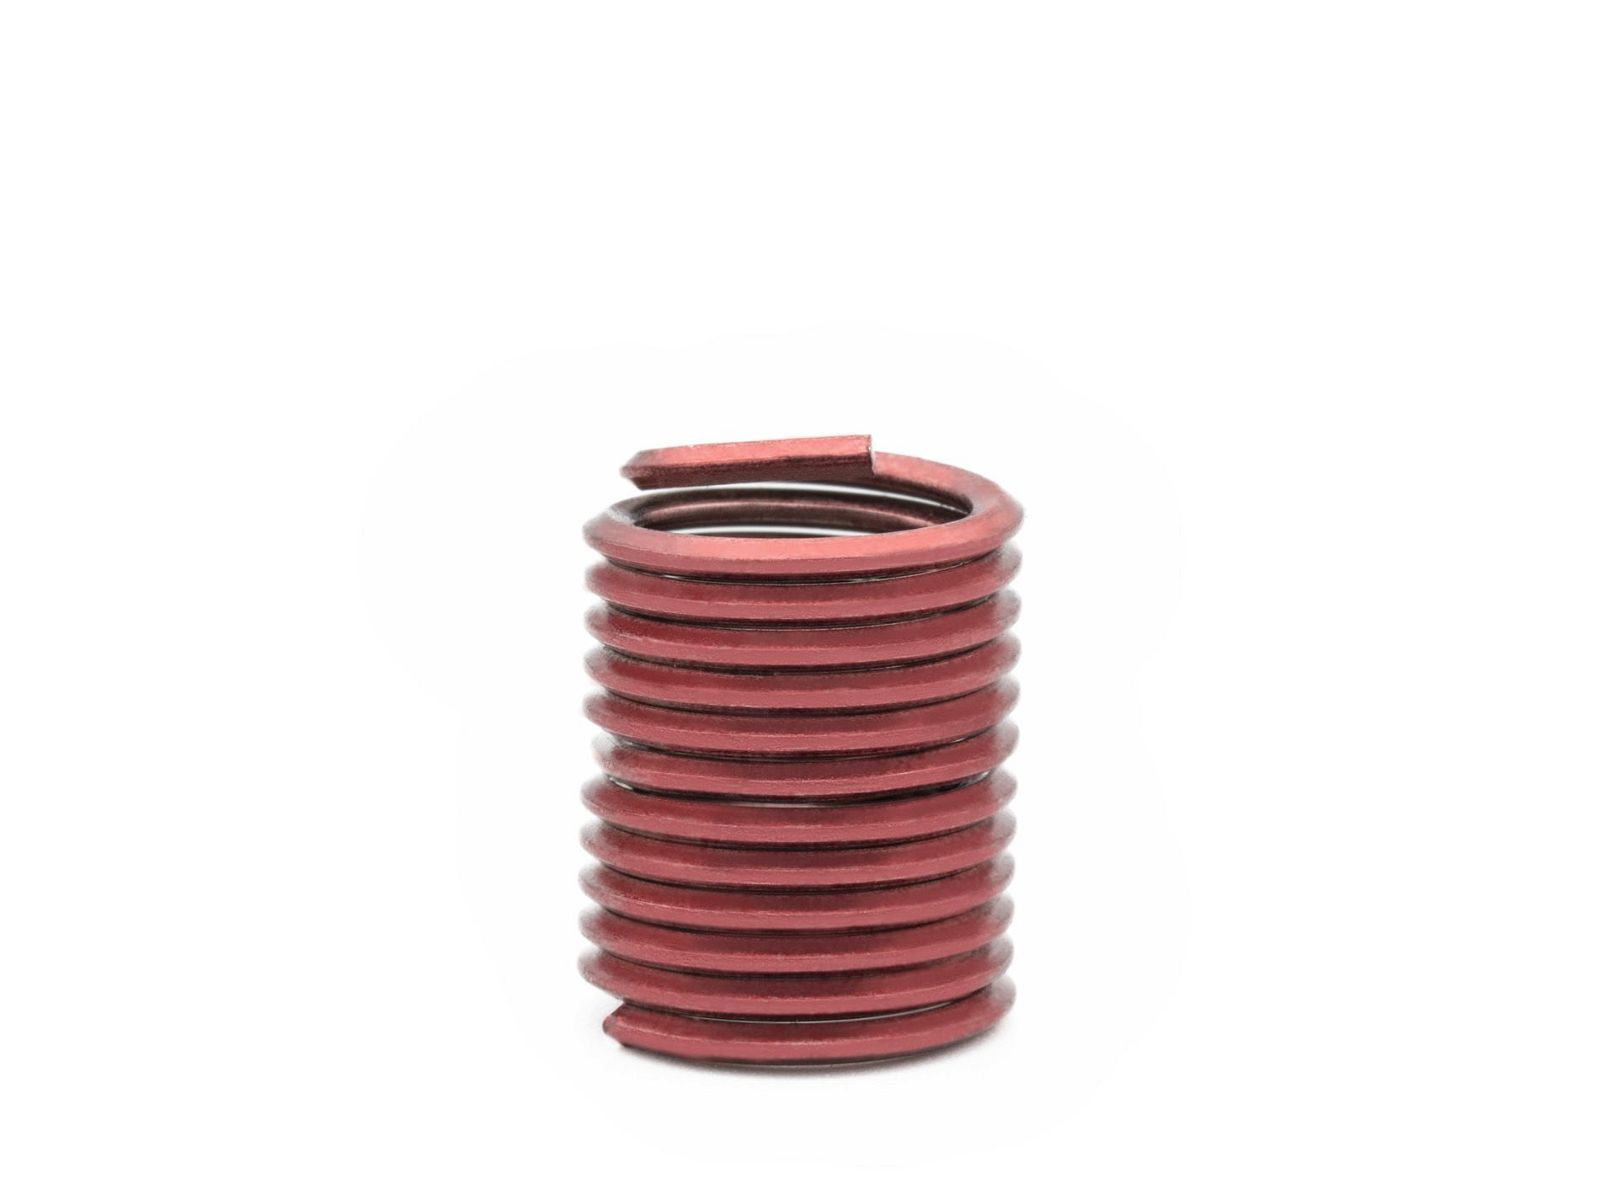 BaerCoil Wire Thread Inserts UNC 5/8 x 11 - 2.0 D (31.75 mm) - screw grip (screw locking) - 50 pcs.